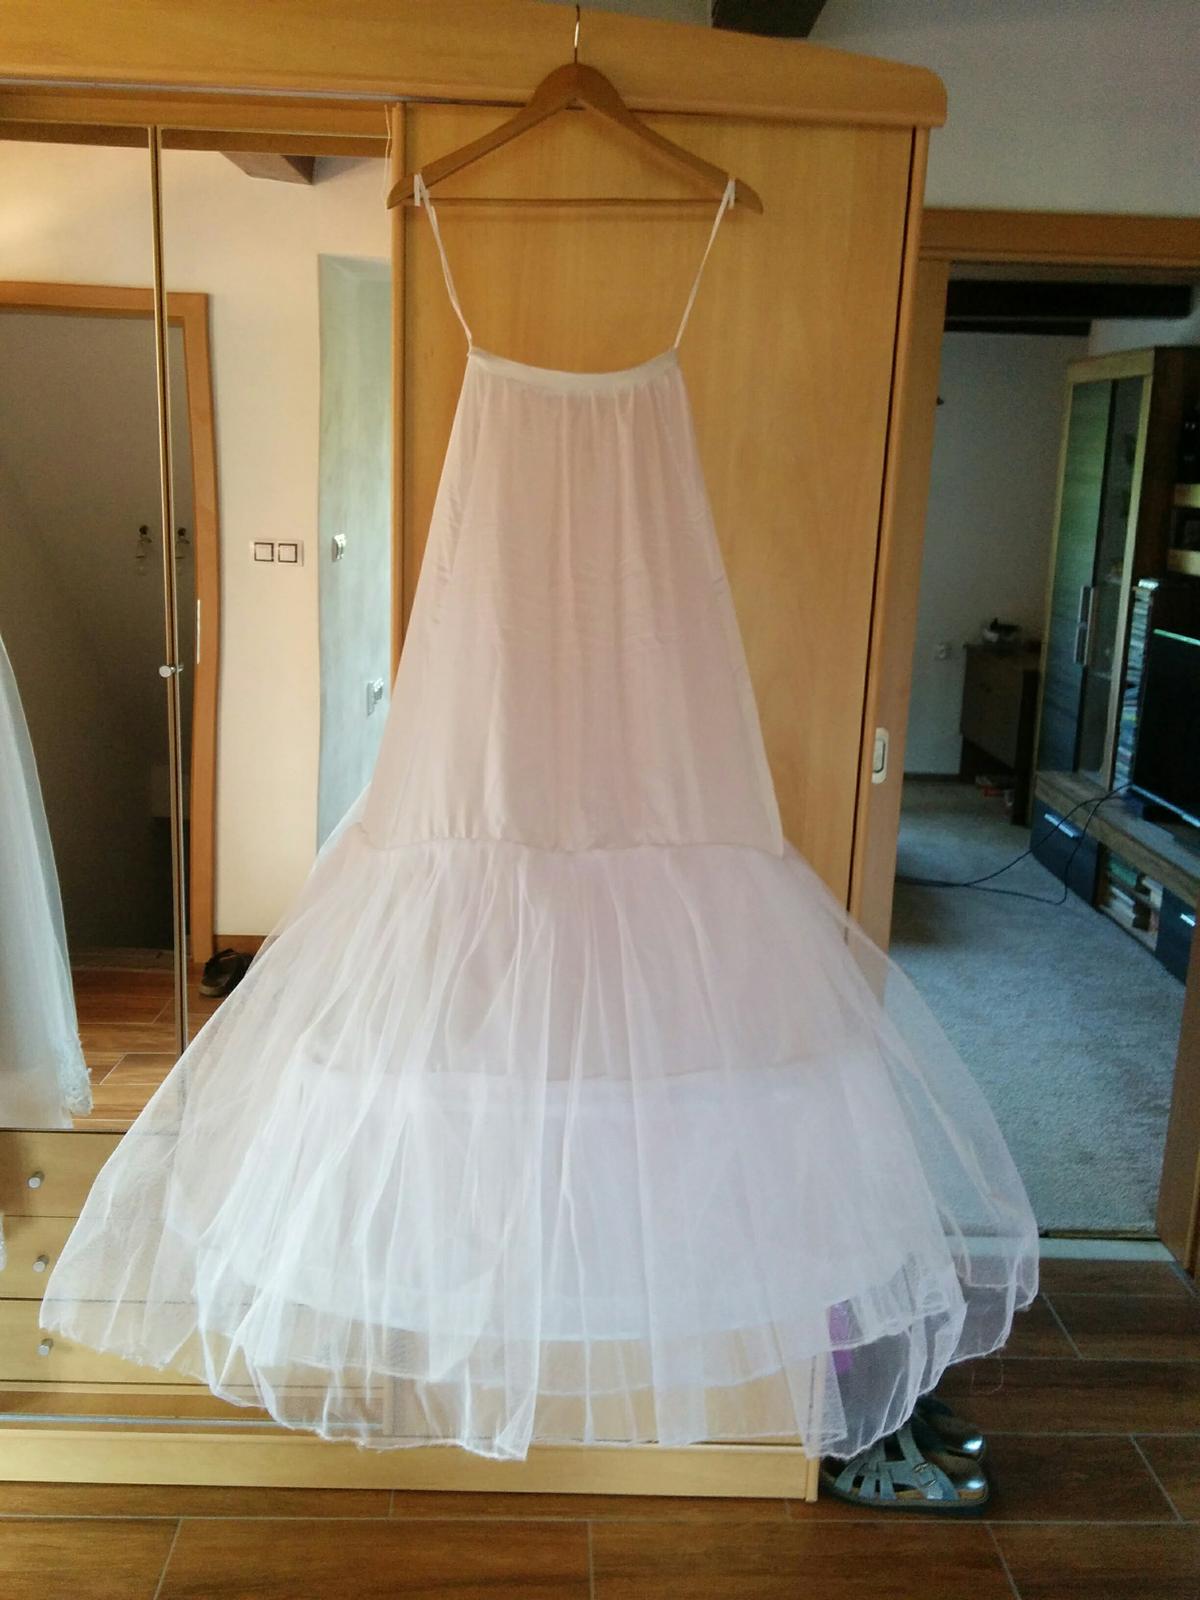 Dvoukruhová spodnice pod svatební šaty - Obrázek č. 1